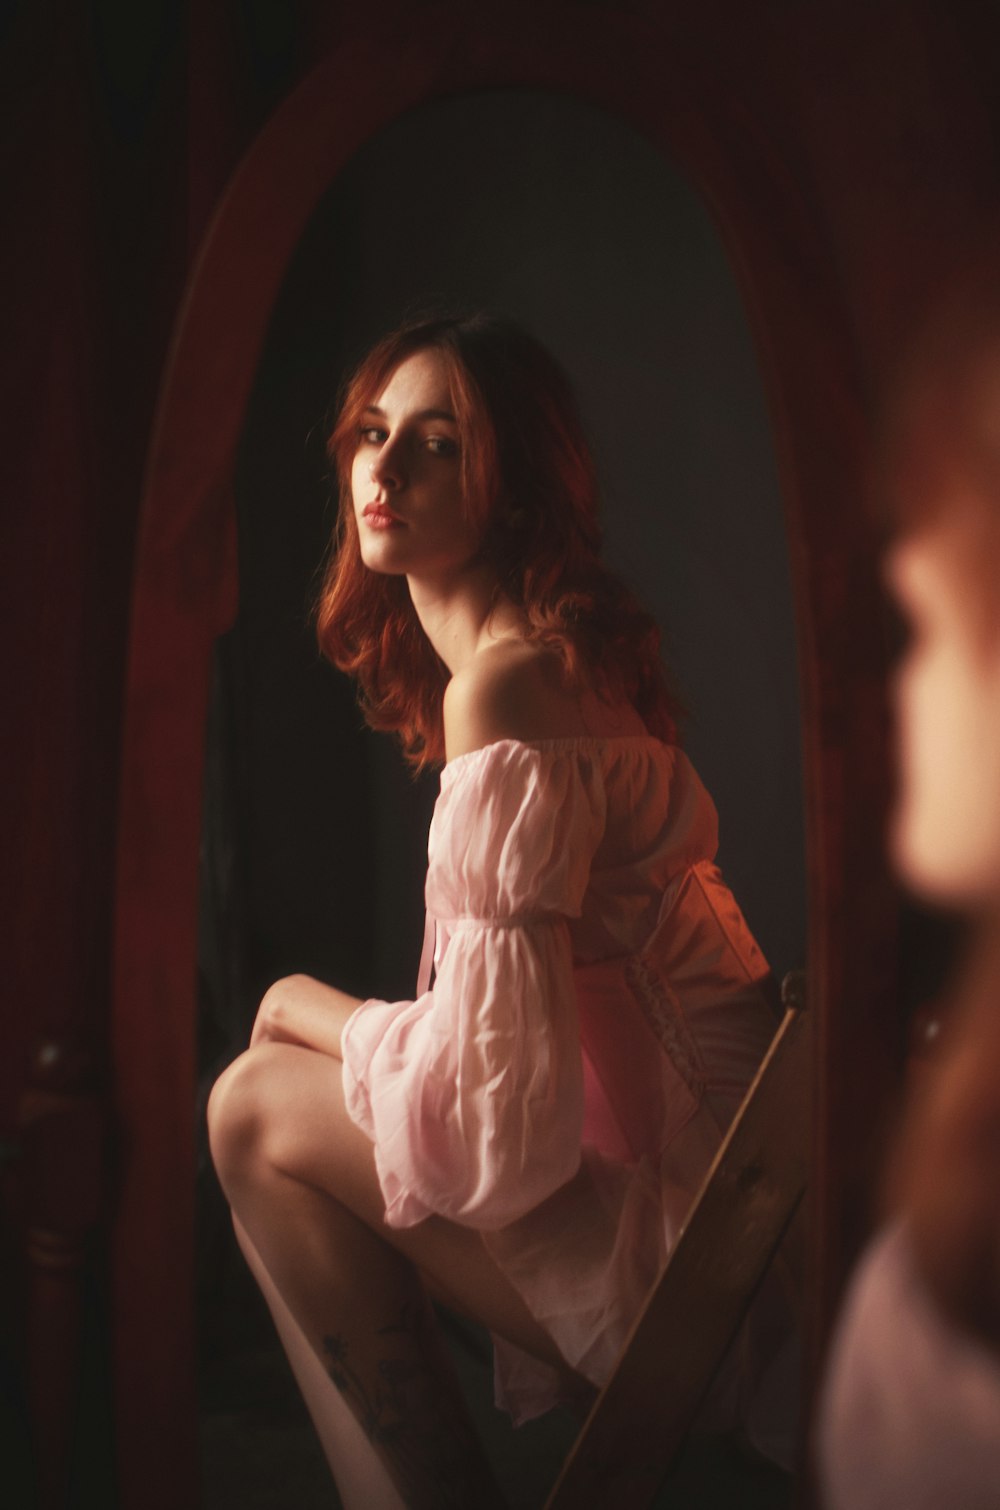 분홍색 드레스를 입은 여자가 거울 앞에 앉아 있다